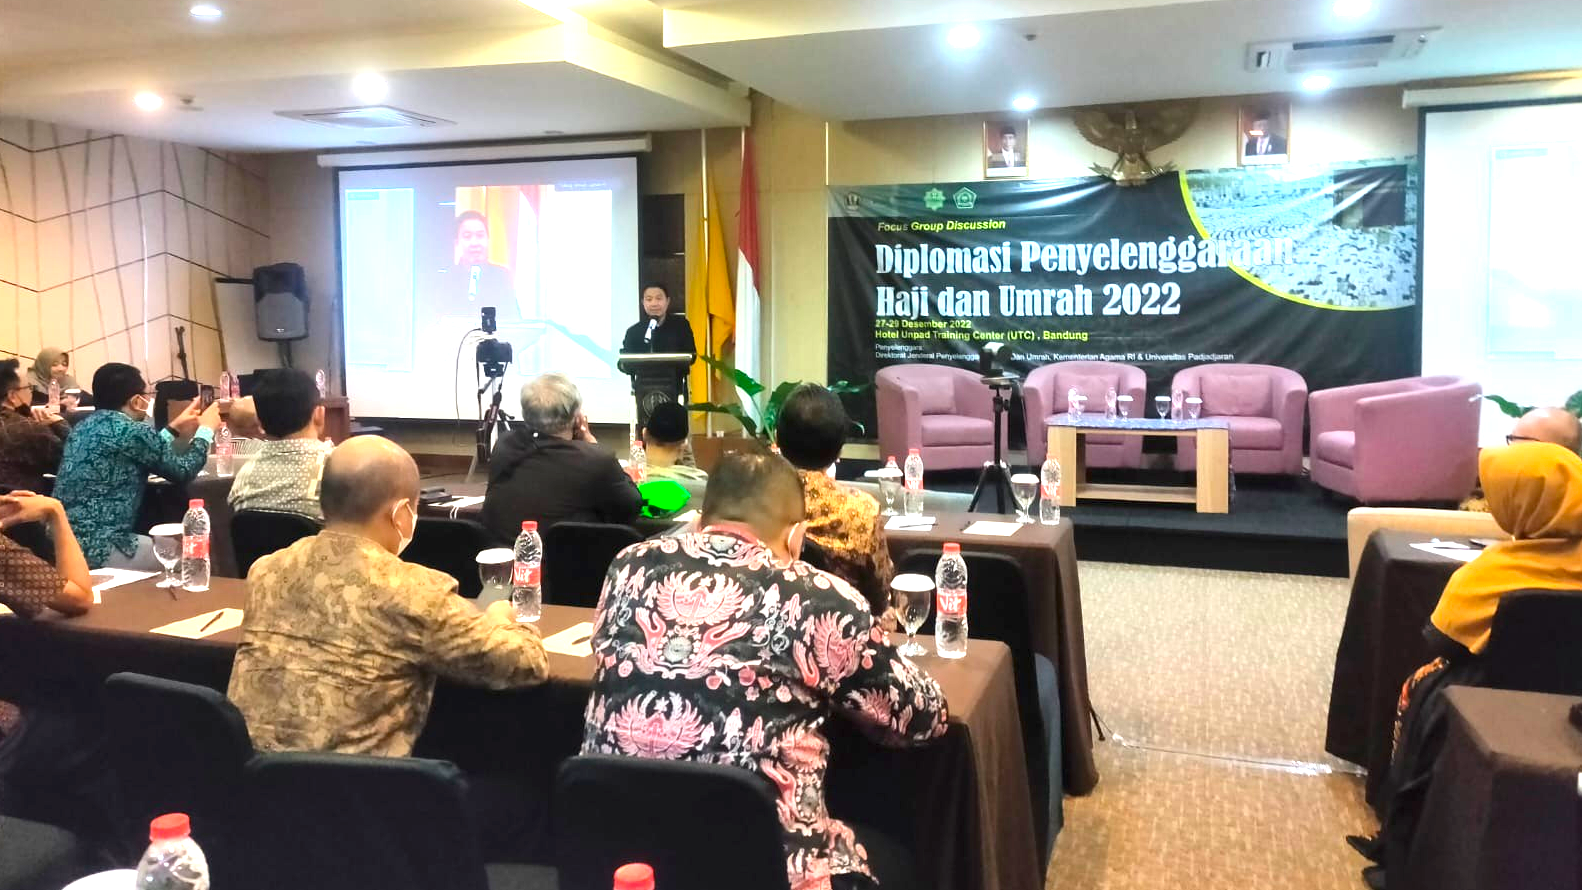 FGD Diplomasi Haji dan Umrah untuk Memperkuat Ekosistem Haji dan Umrah di Indonesia.